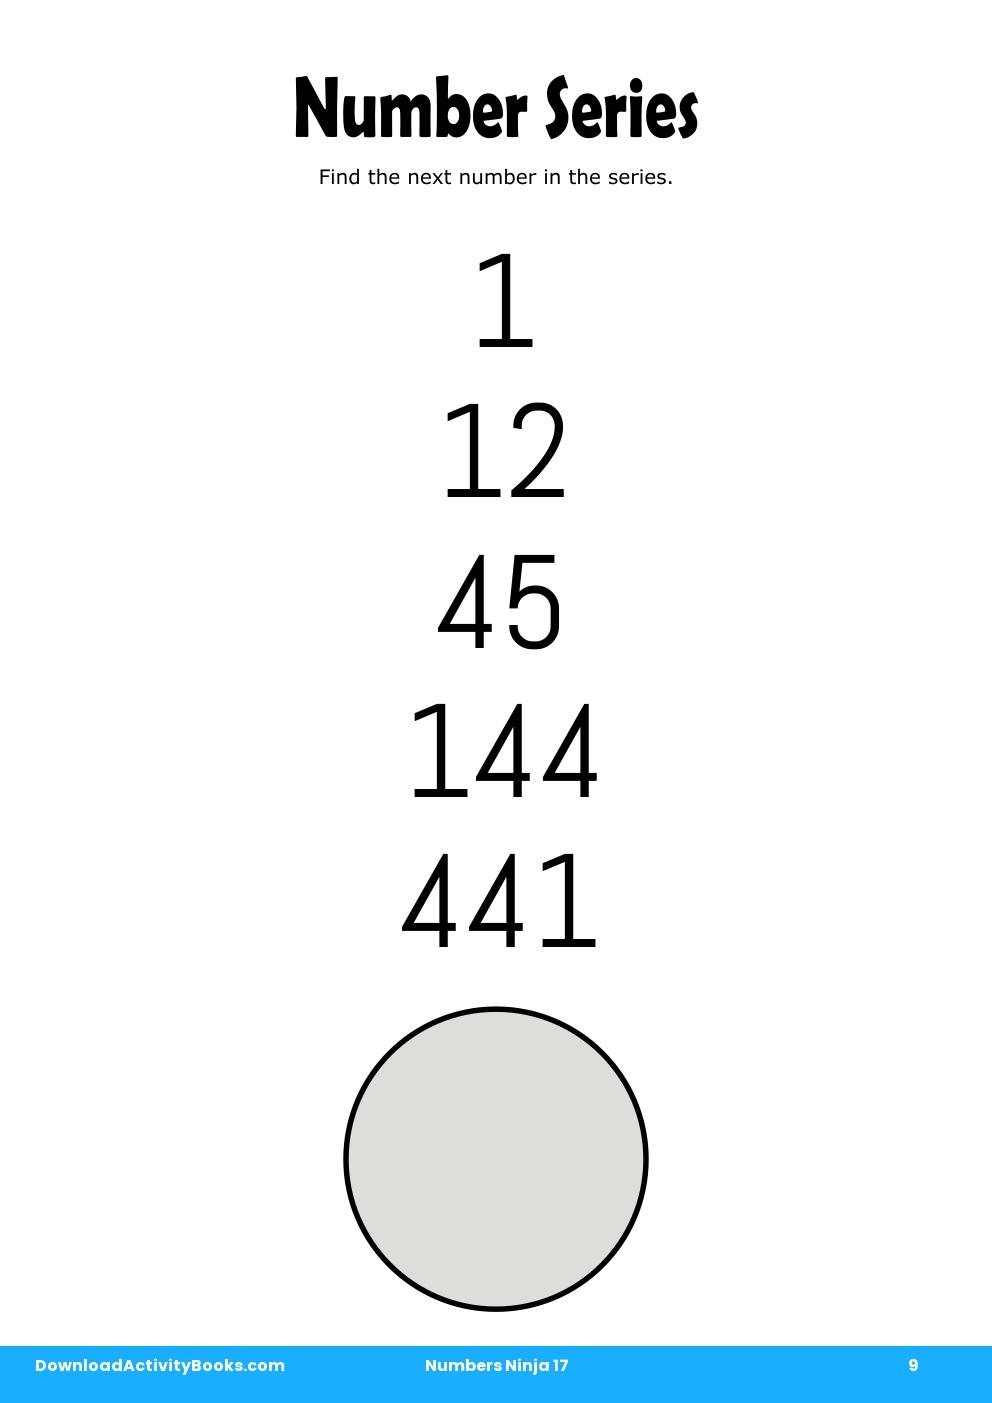 Number Series in Numbers Ninja 17